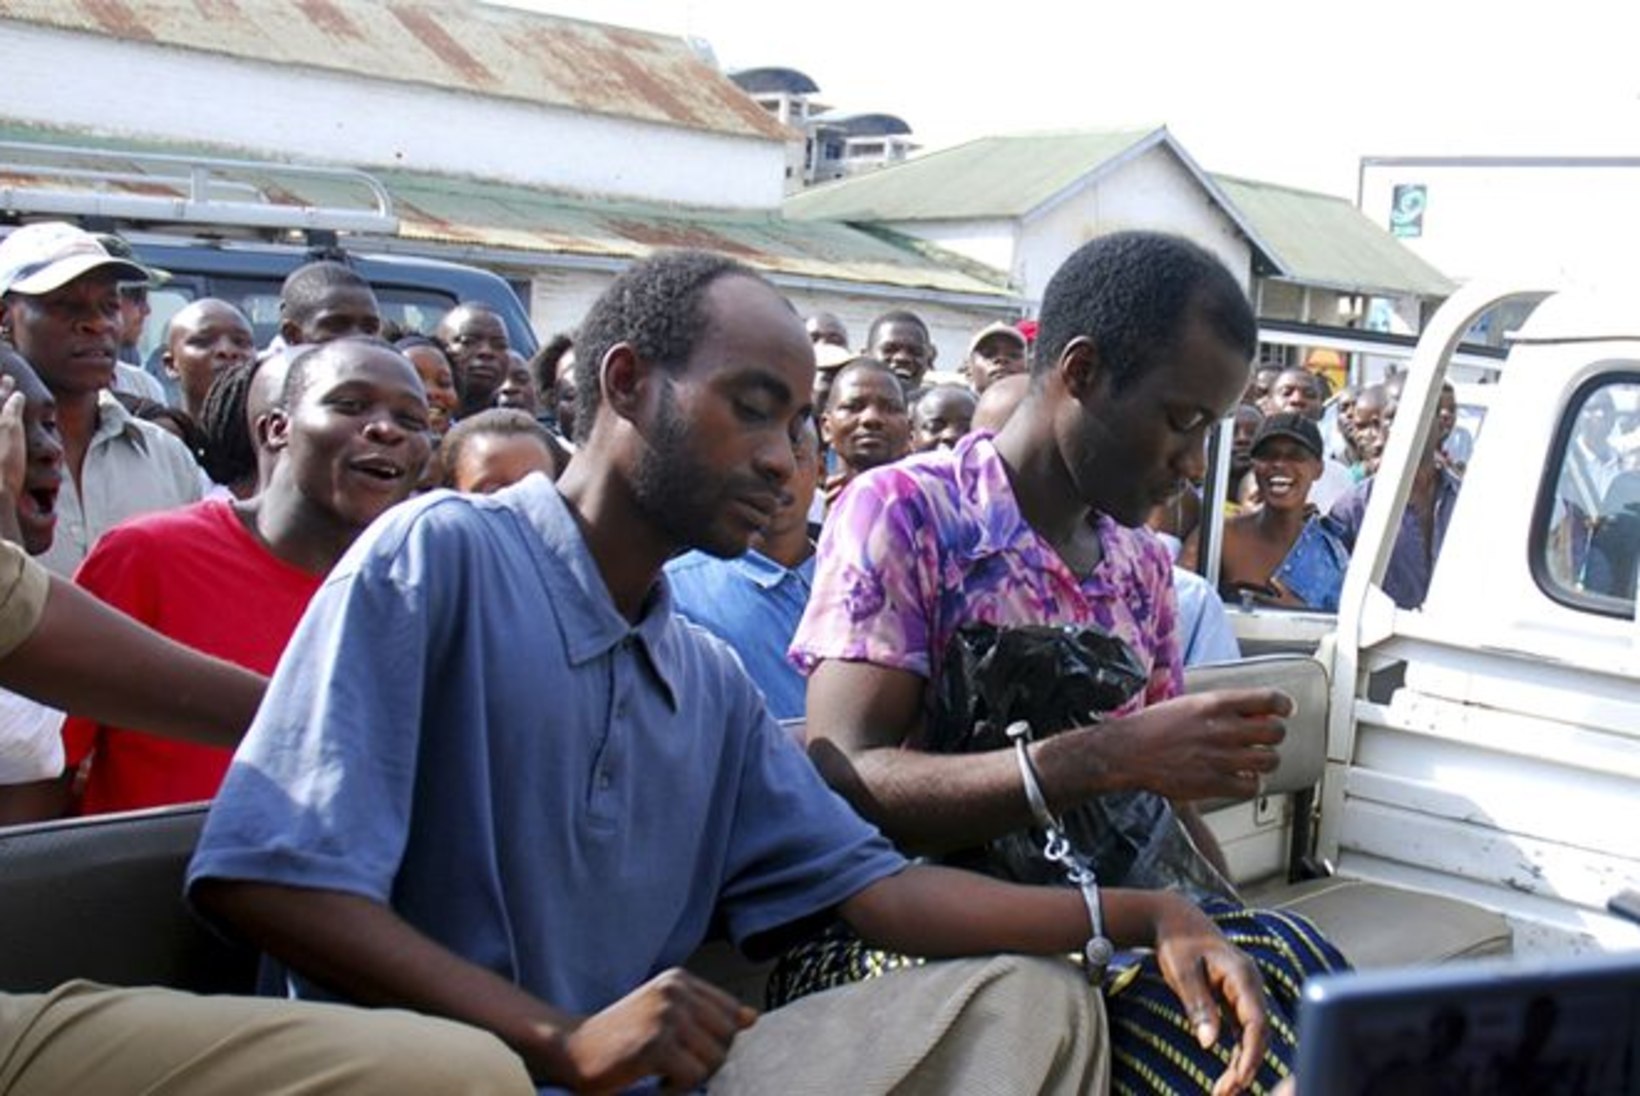 Malawi geipaar sai presidendi loal vanglast priiks